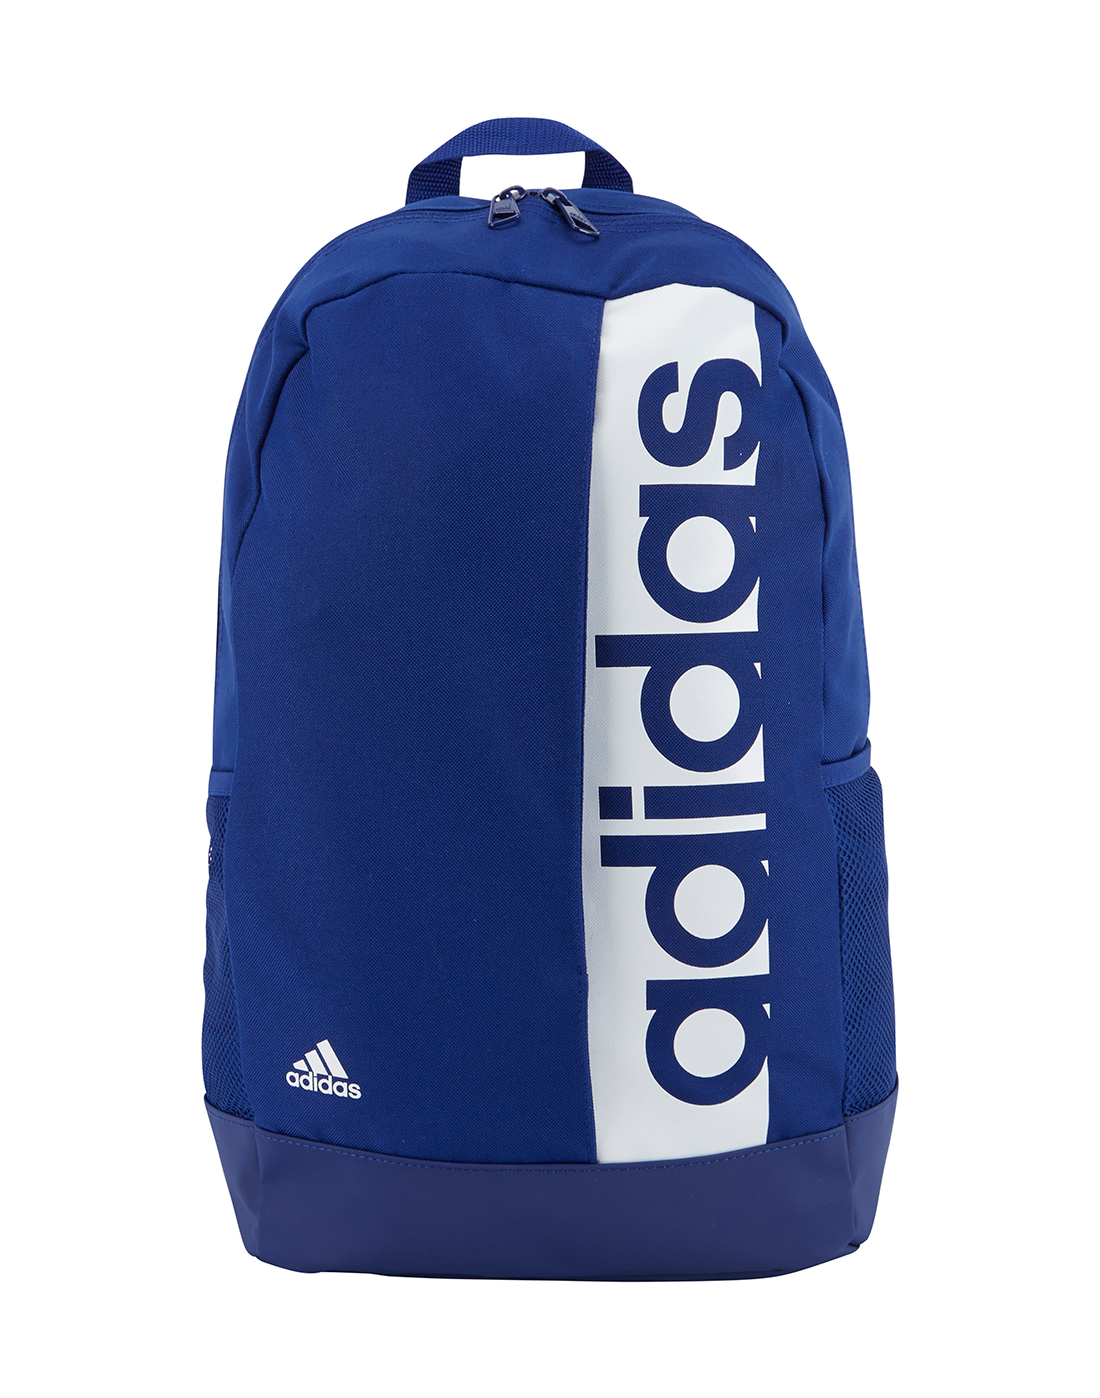 adidas school bags boys